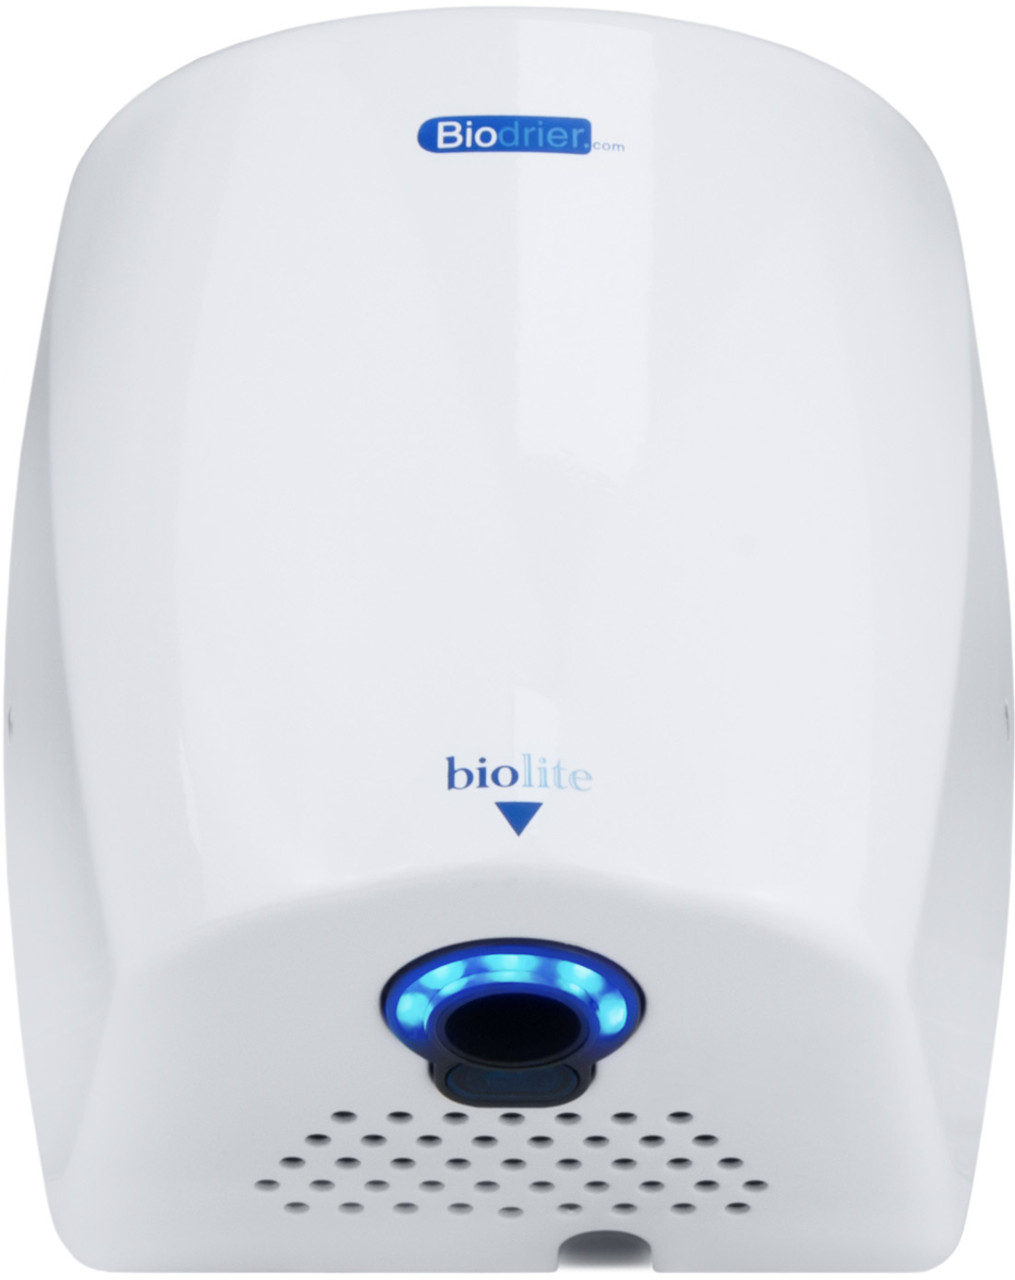 HD-BL09W - Biodrier Biolite Hand Dryer - White - Bottom